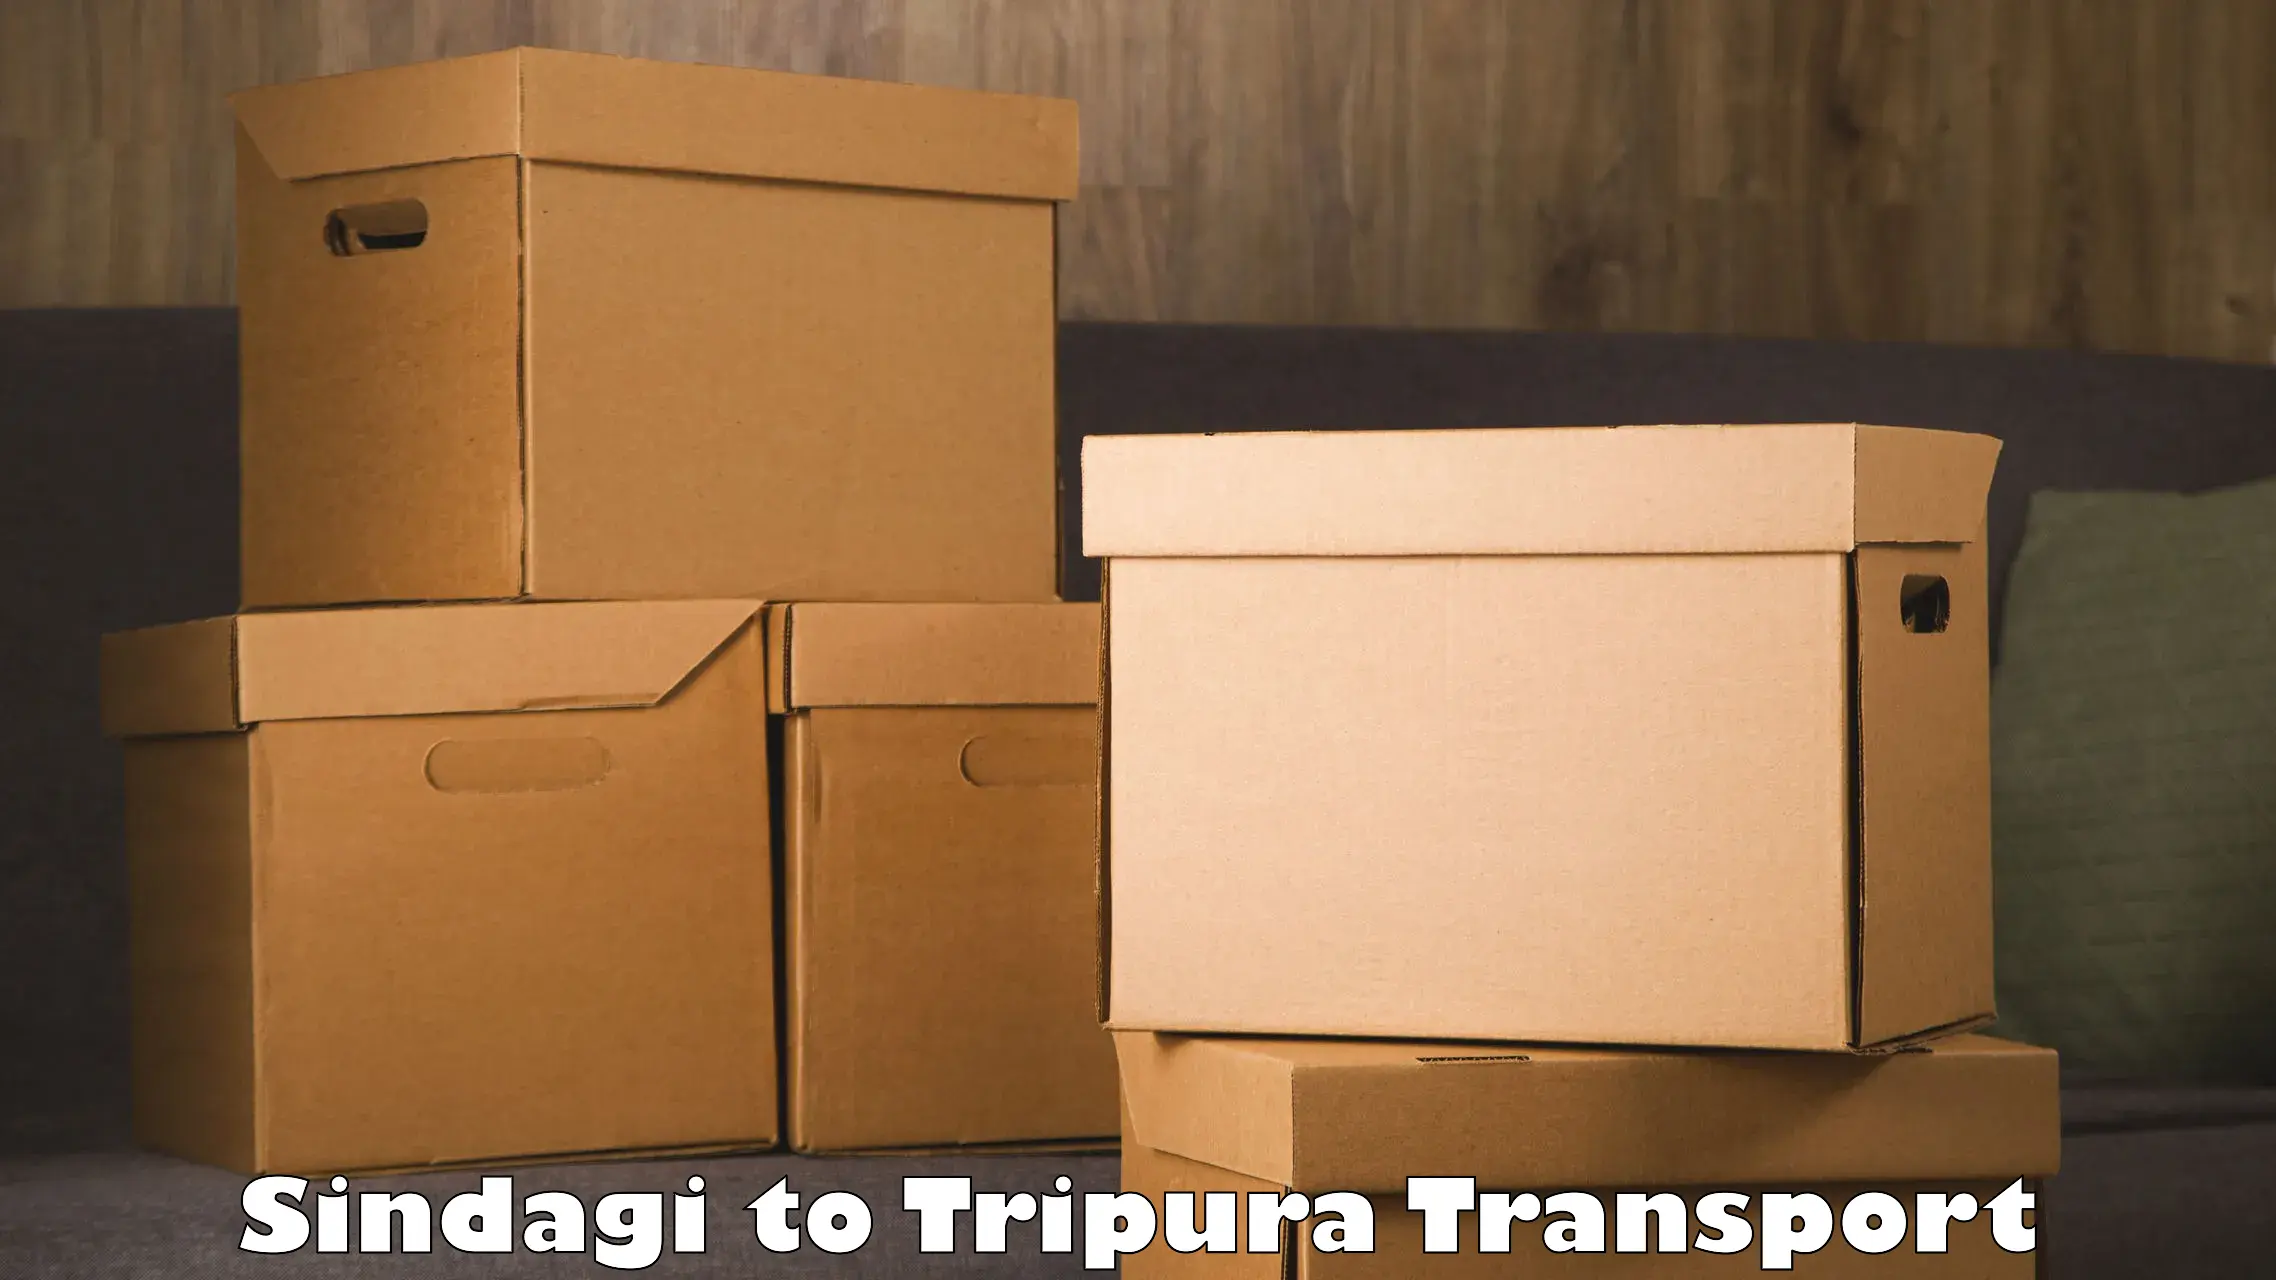 Container transport service Sindagi to Tripura